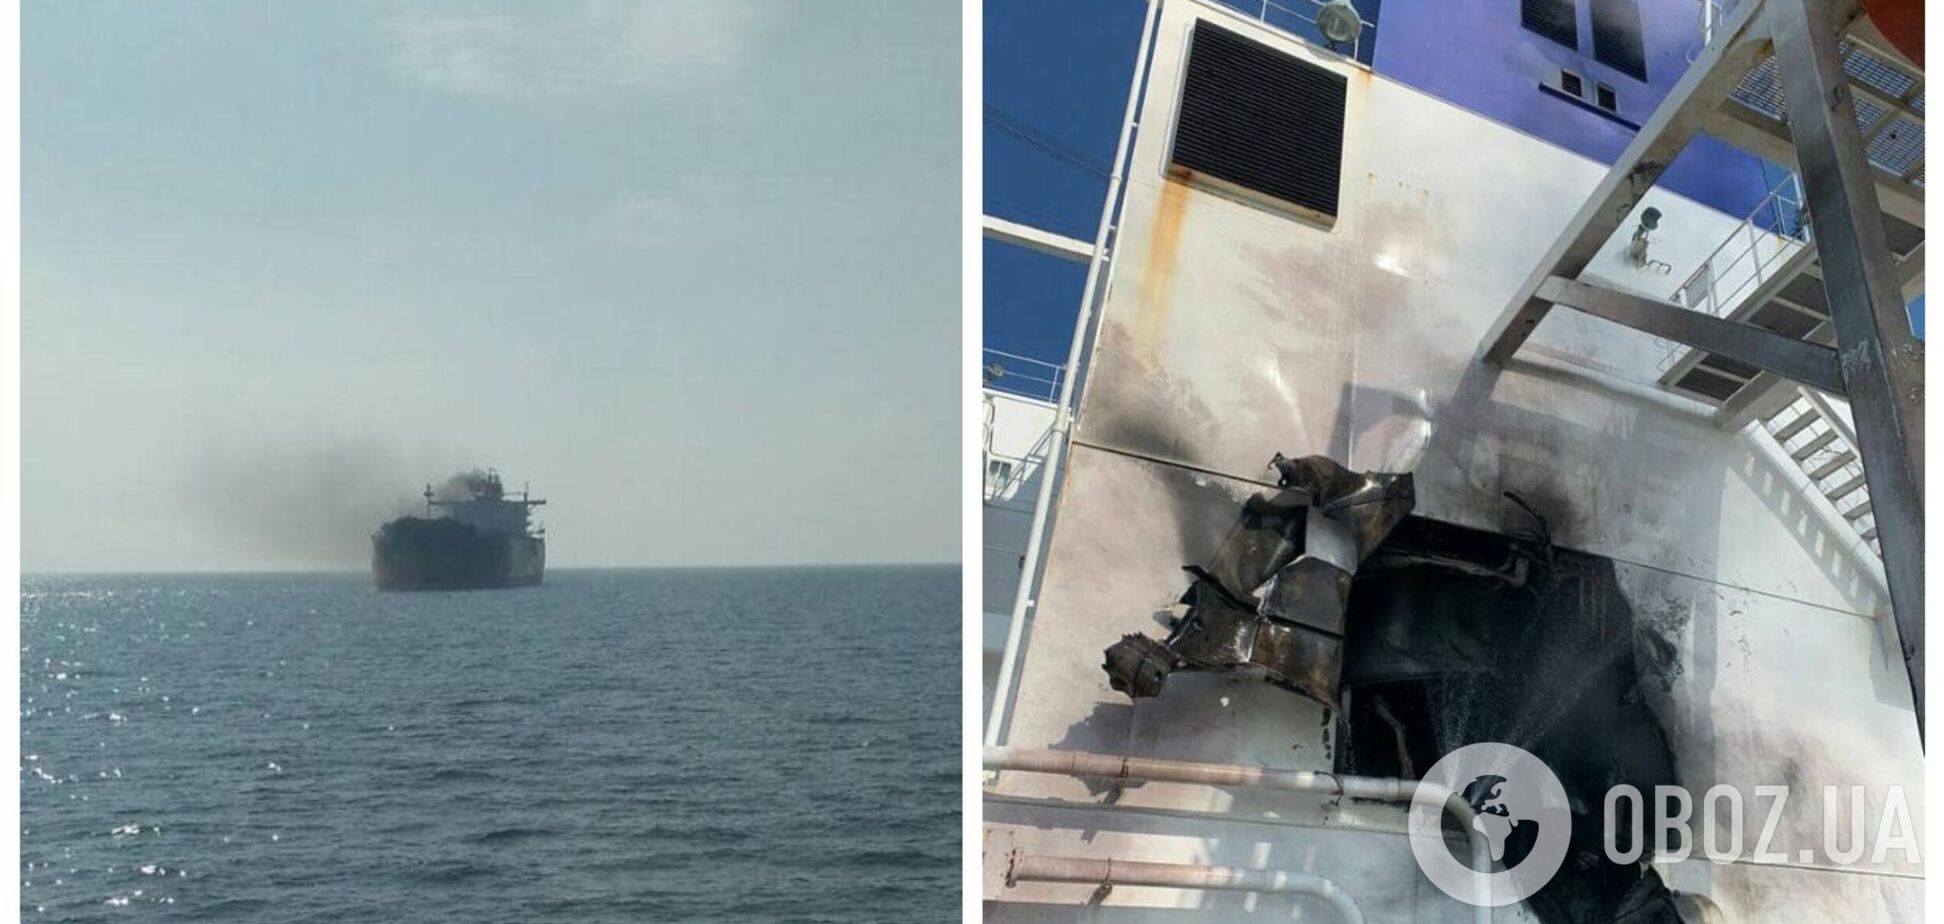 Российские оккупанты обстреляли молдовский корабль в Черном море – Главнокомандующий ВСУ